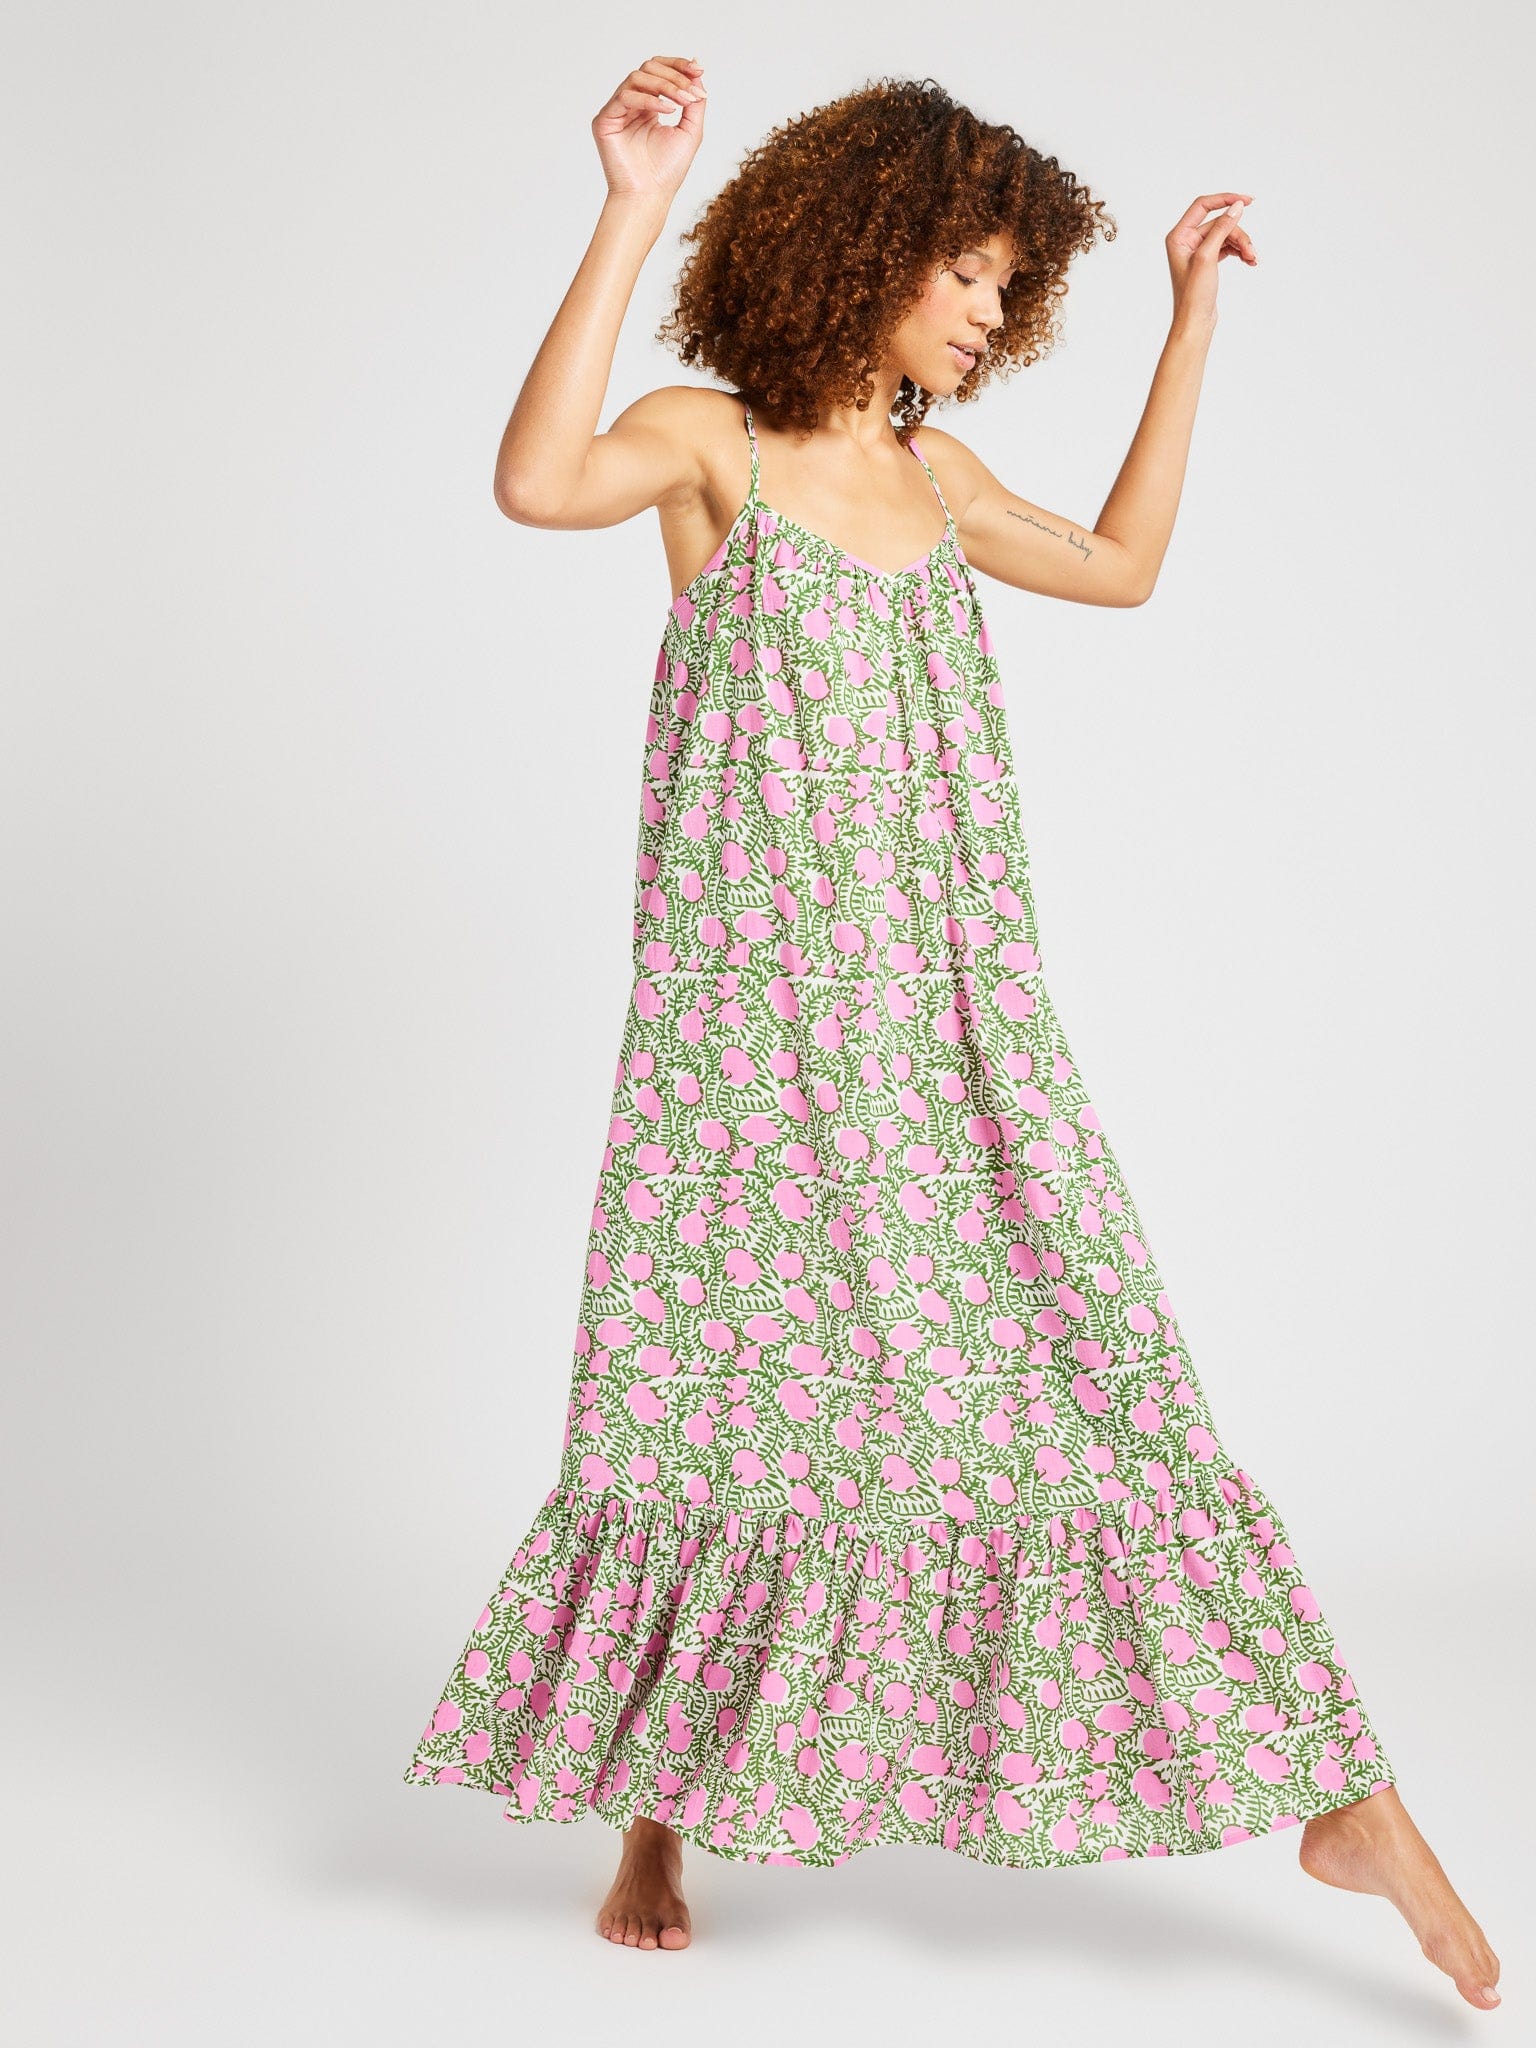 MILLE Clothing Sienna Dress in Pink Lemonade